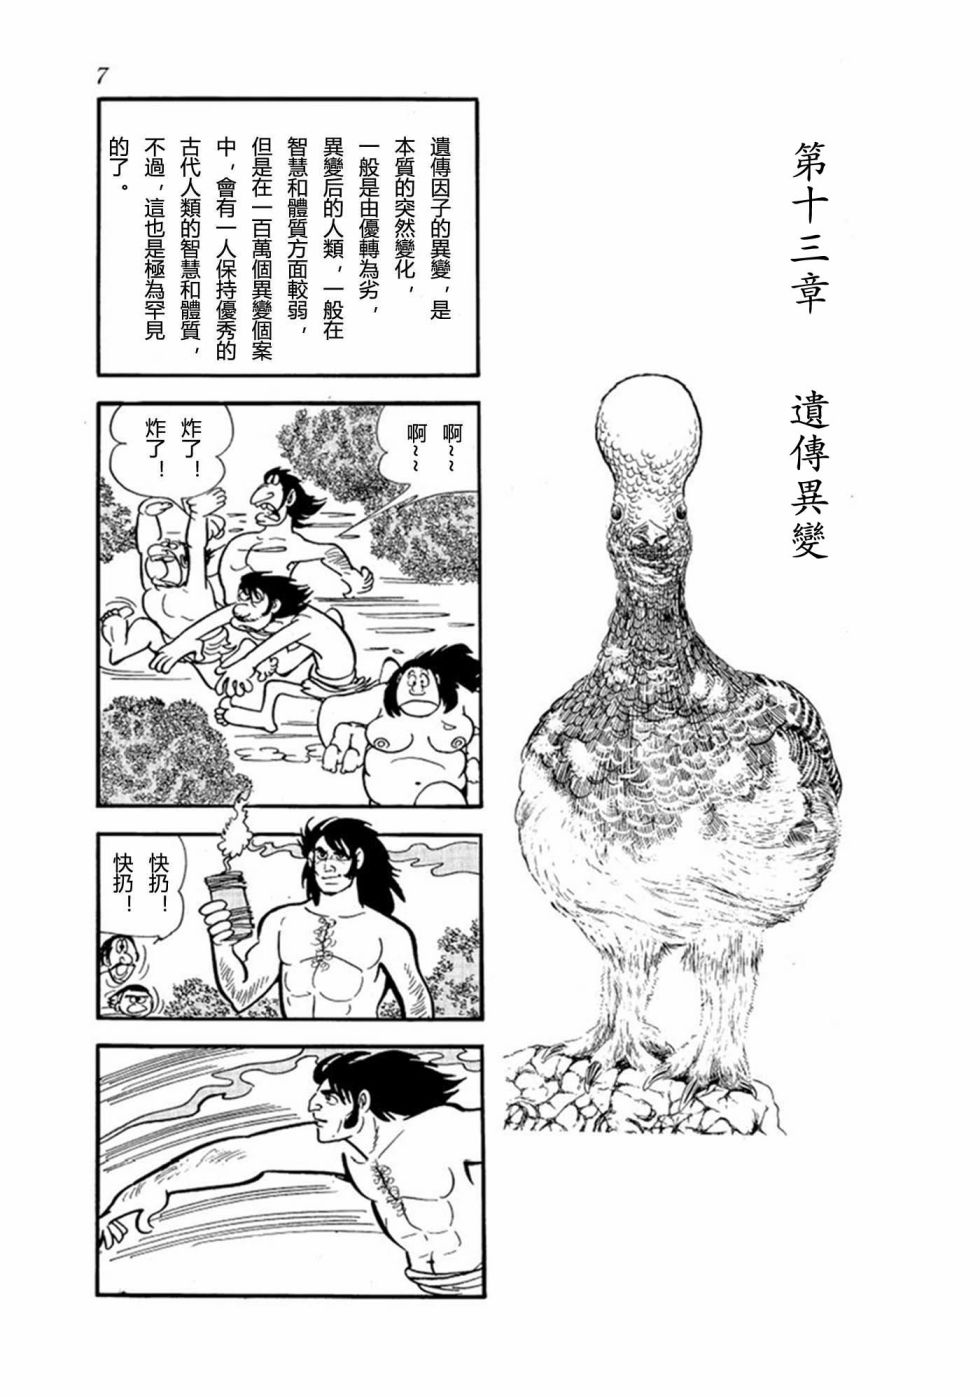 鳥人大系 第02卷 漫畫線上看 動漫戲說 Acgn Cc